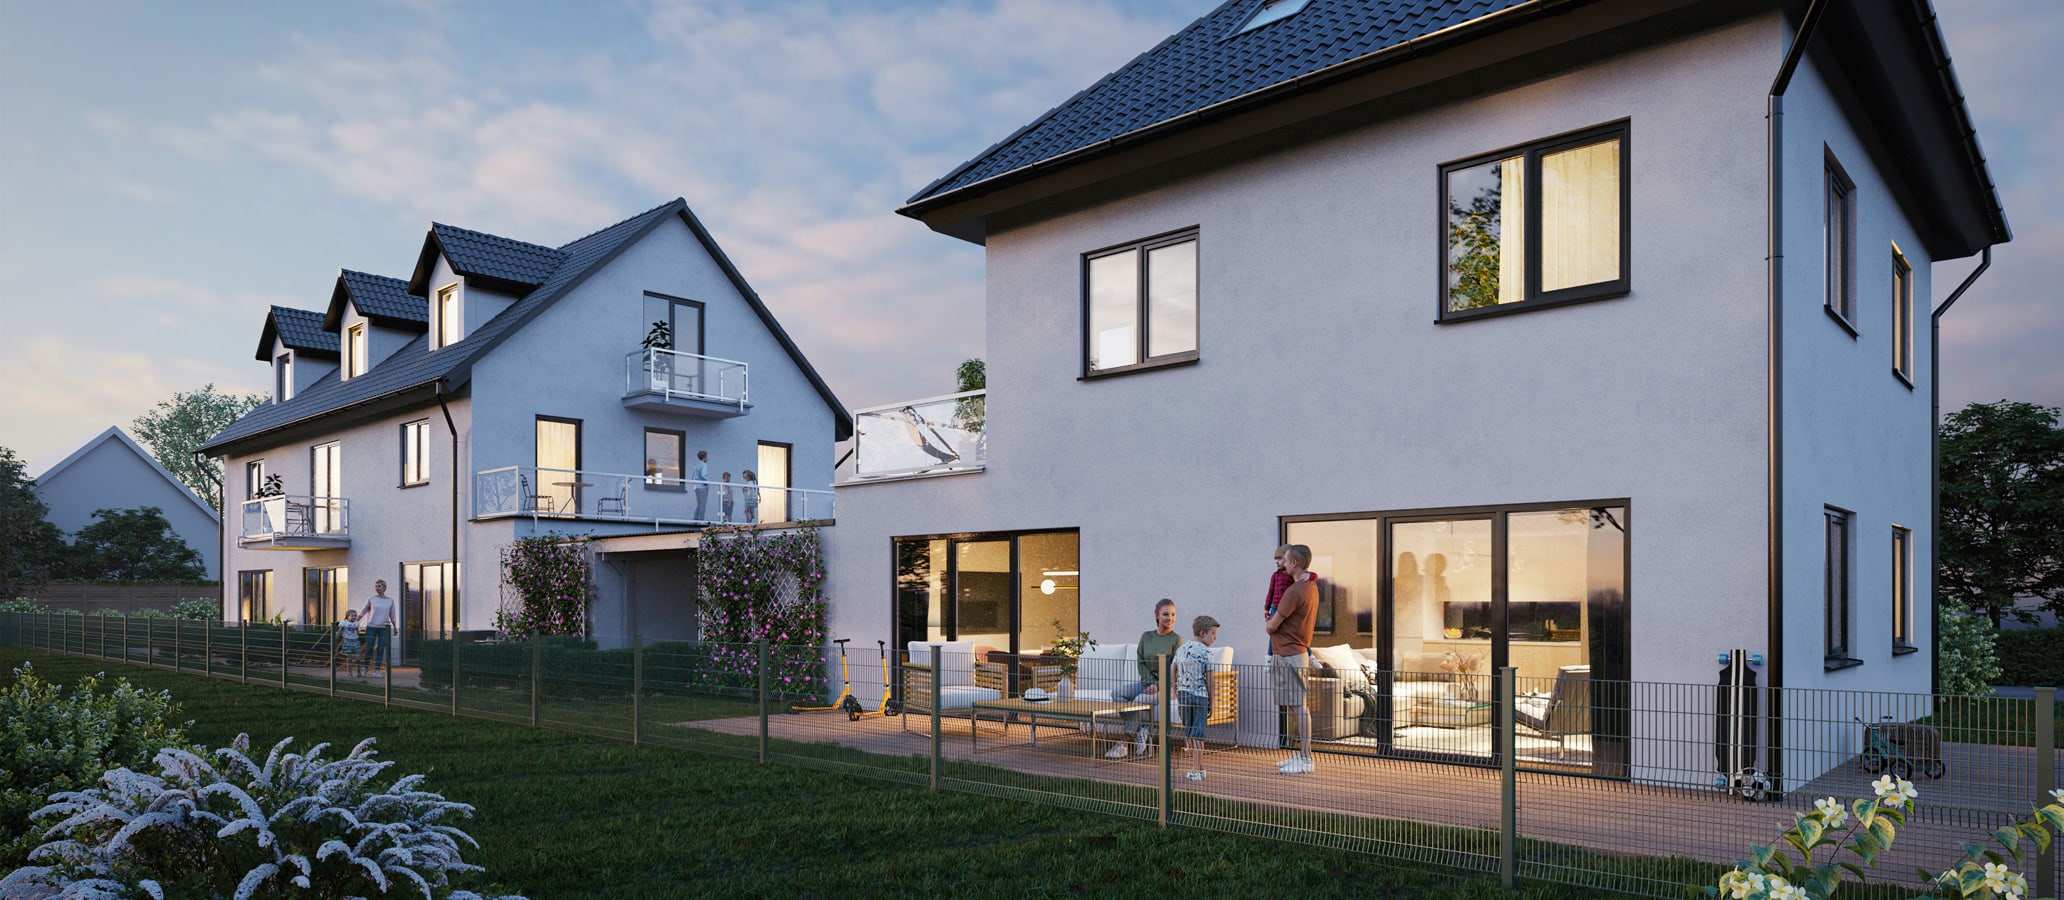 Außenvisualisierung eines Münchner Einfamilienhauses bei Nacht